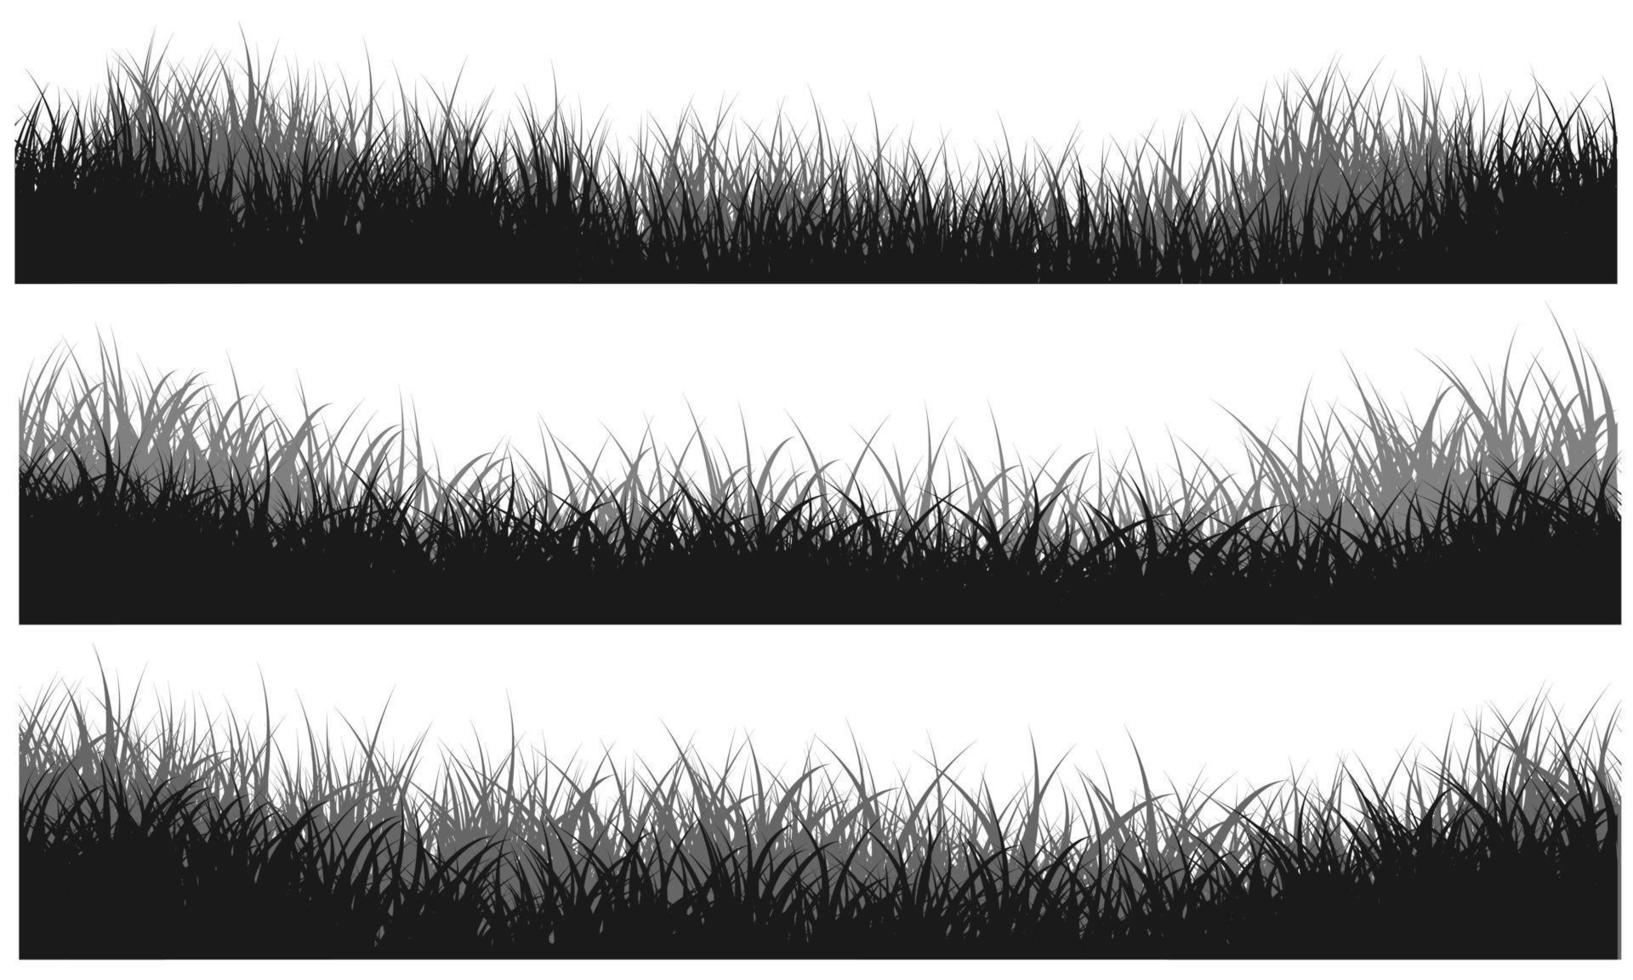 erba in bianco e nero, fondo erboso, campo erboso vettore